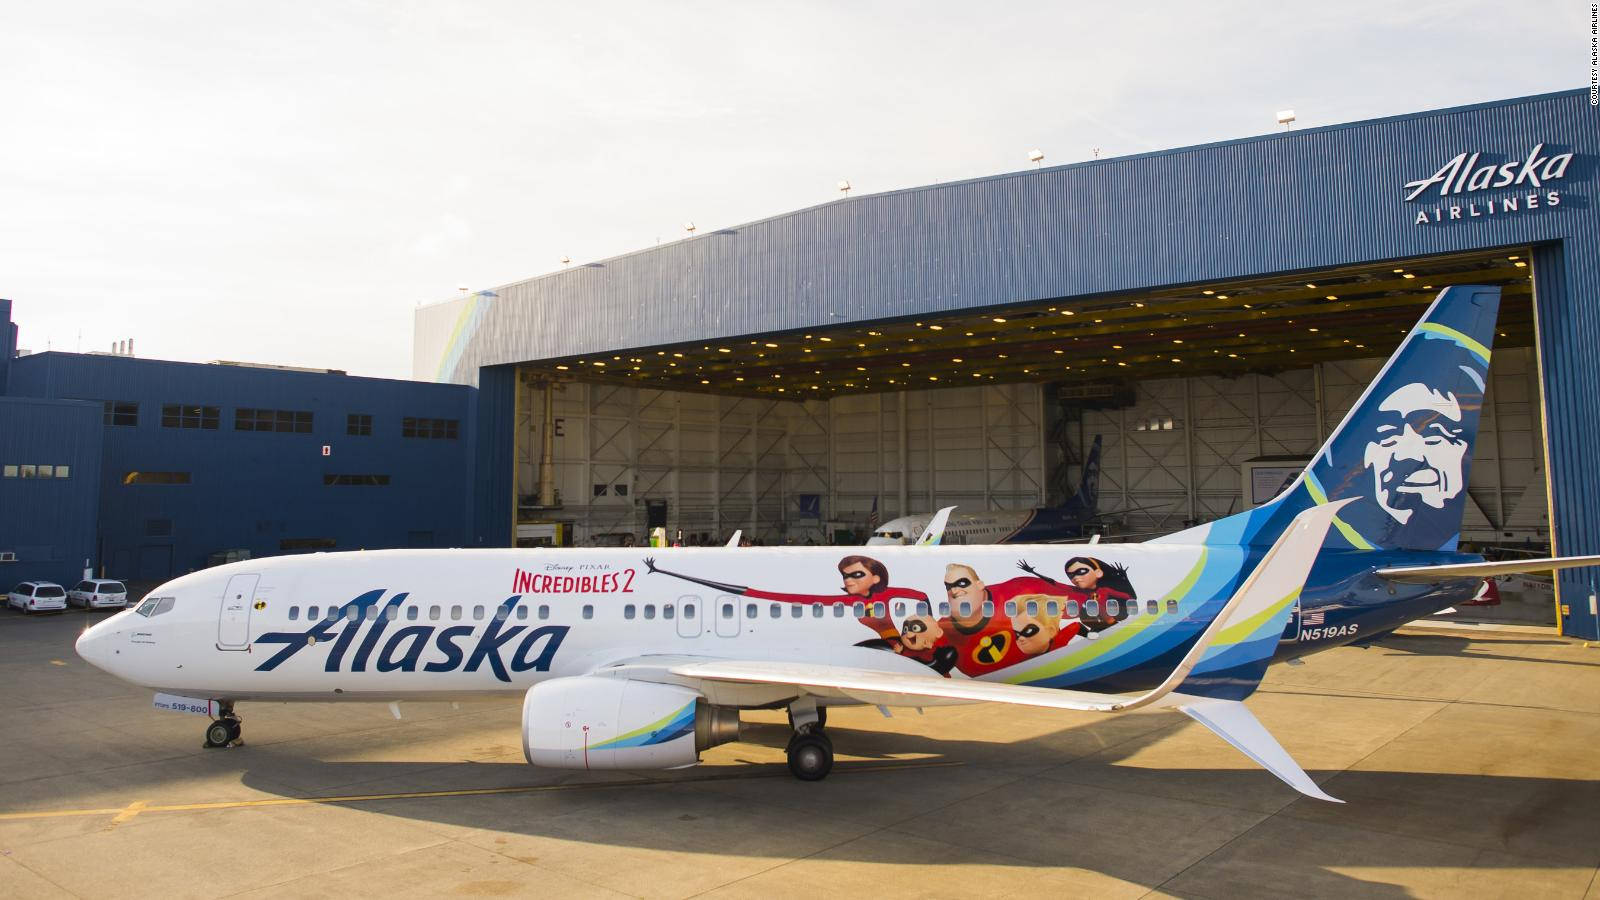 Alaskaairlines Das Unglaubliche Flugzeug Wallpaper